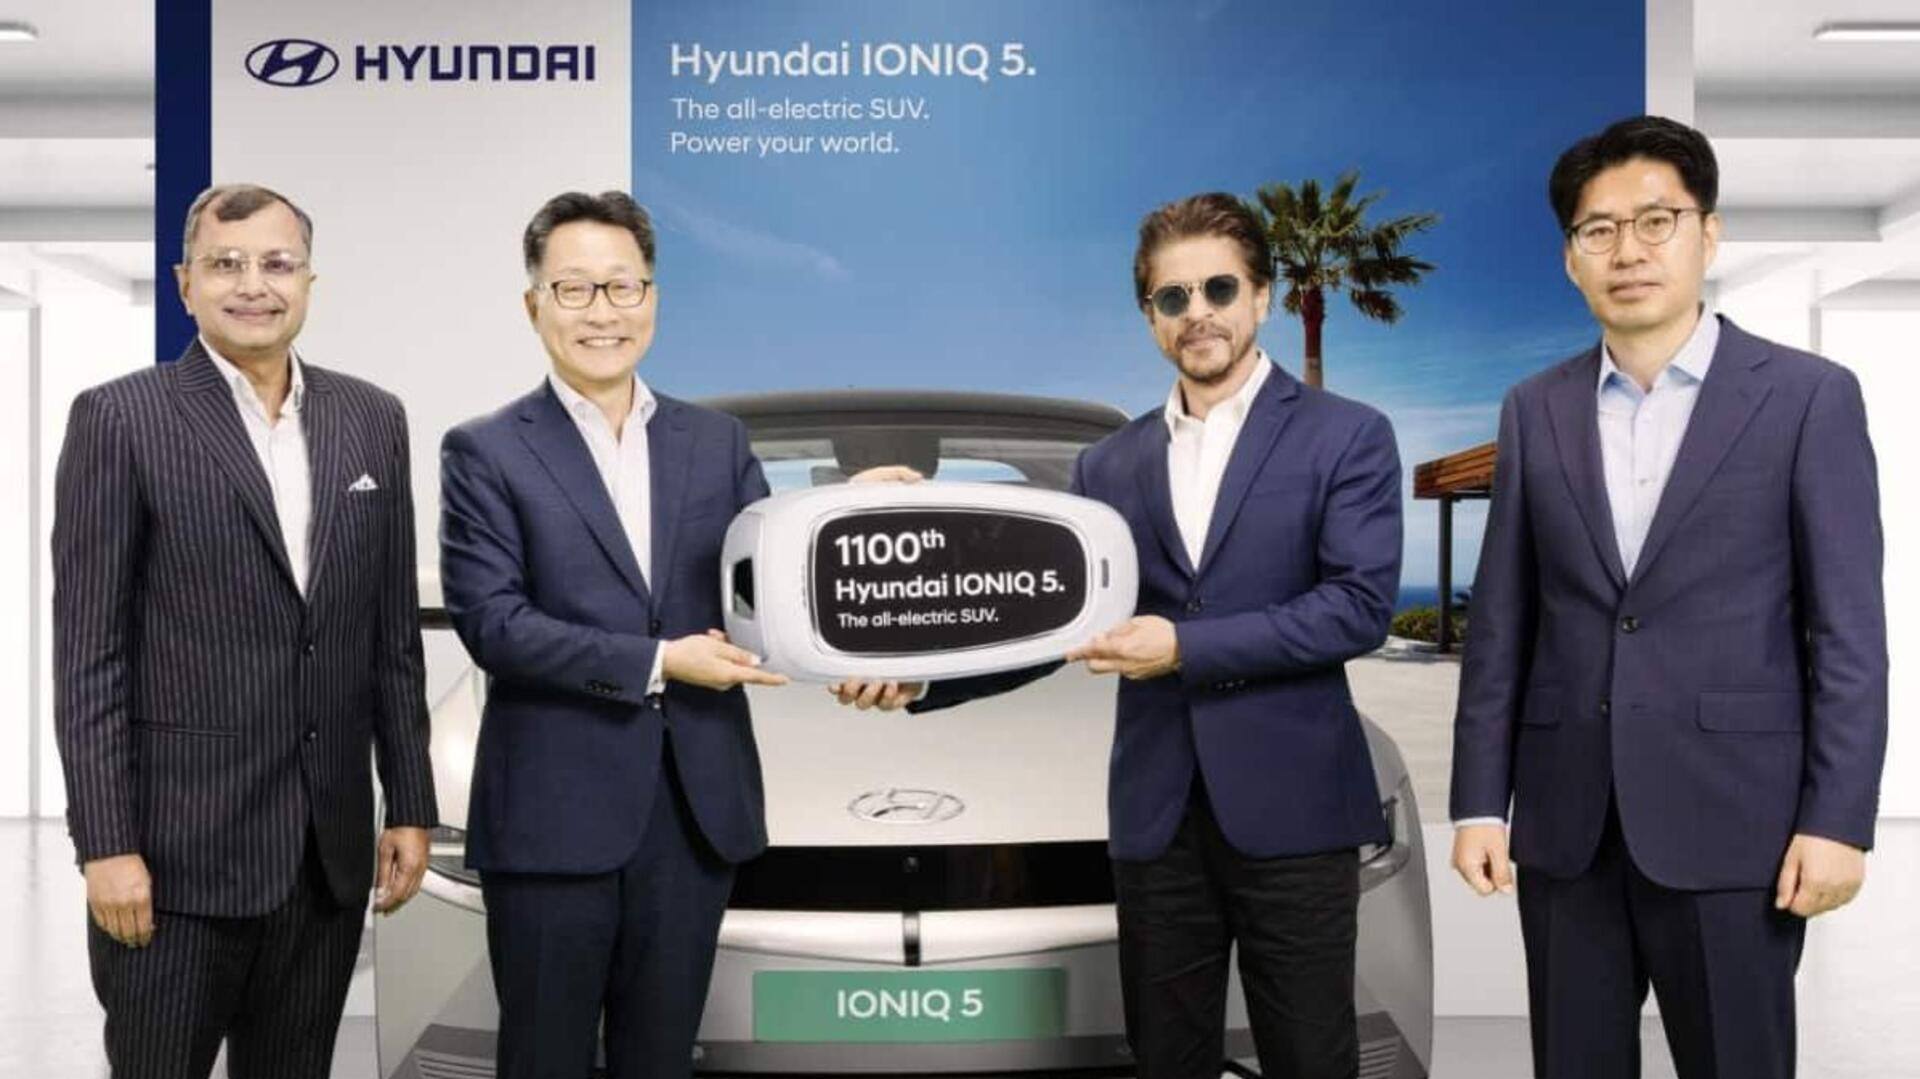 Shah Rukh Khan receives Hyundai IONIQ 5 as first EV